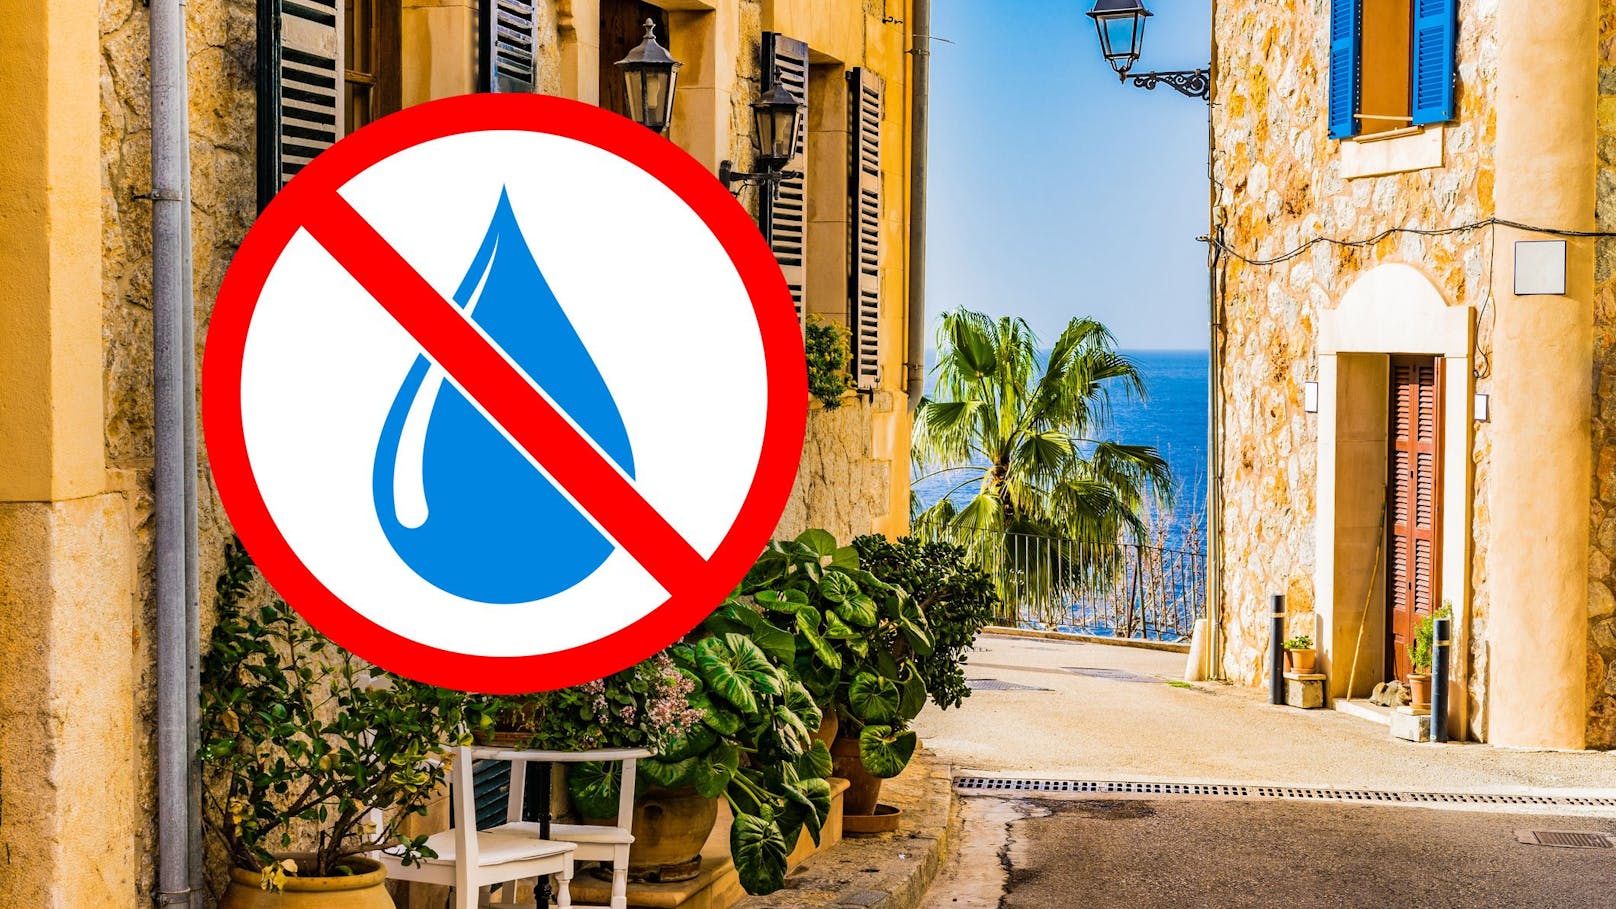 Touristen-Ort auf Mallorca wird das Wasser abgedreht